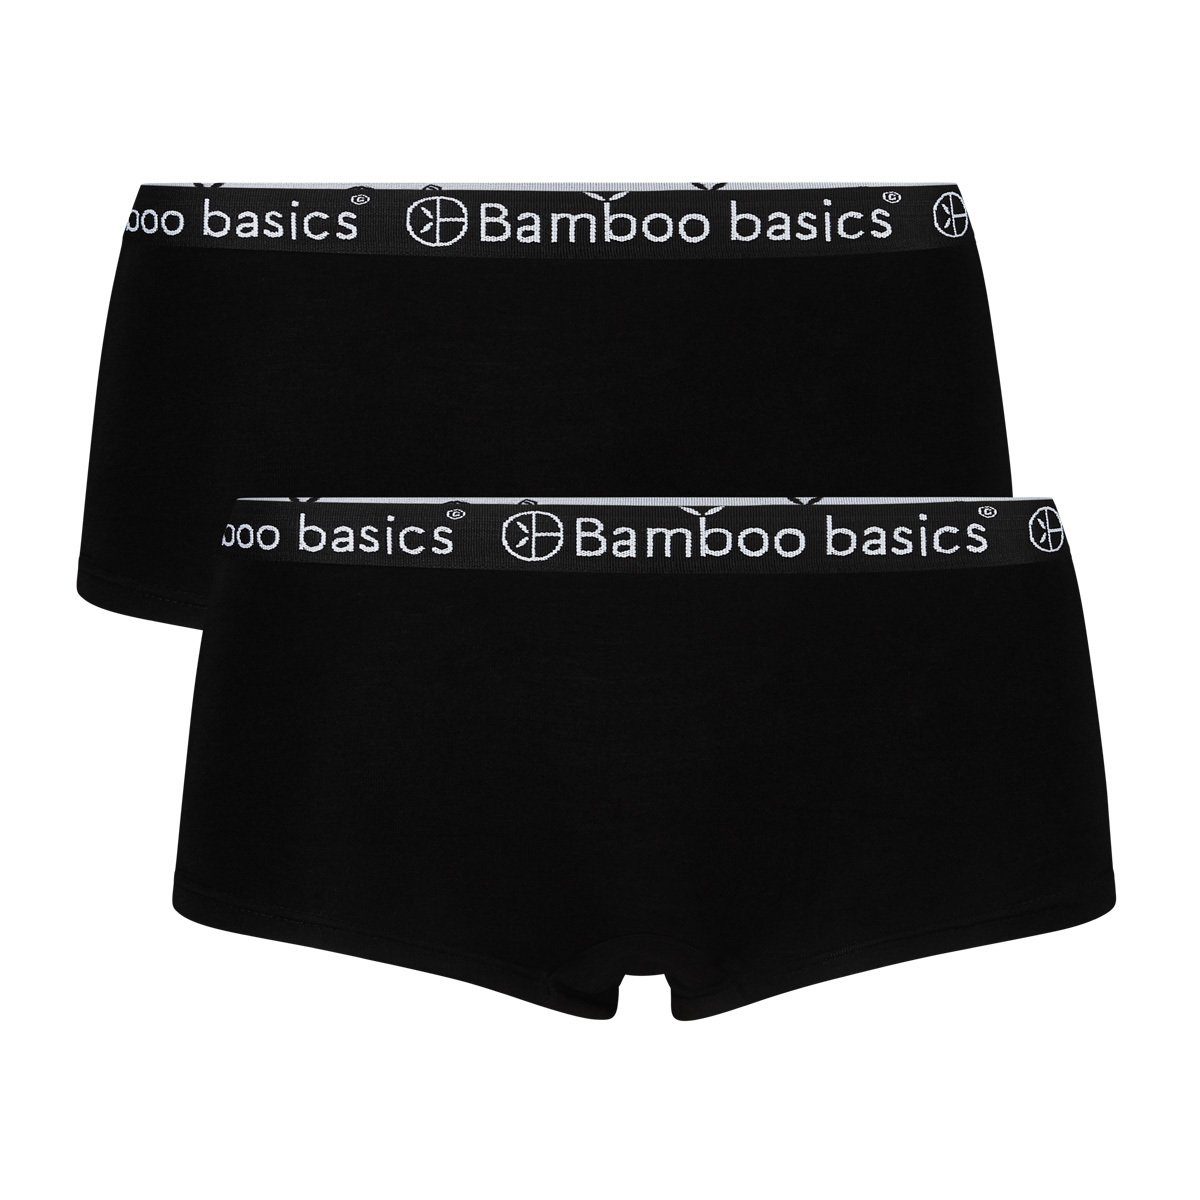 Bamboo basics Panty Damen Hipster IRIS, 2er Pack - Panty Schwarz